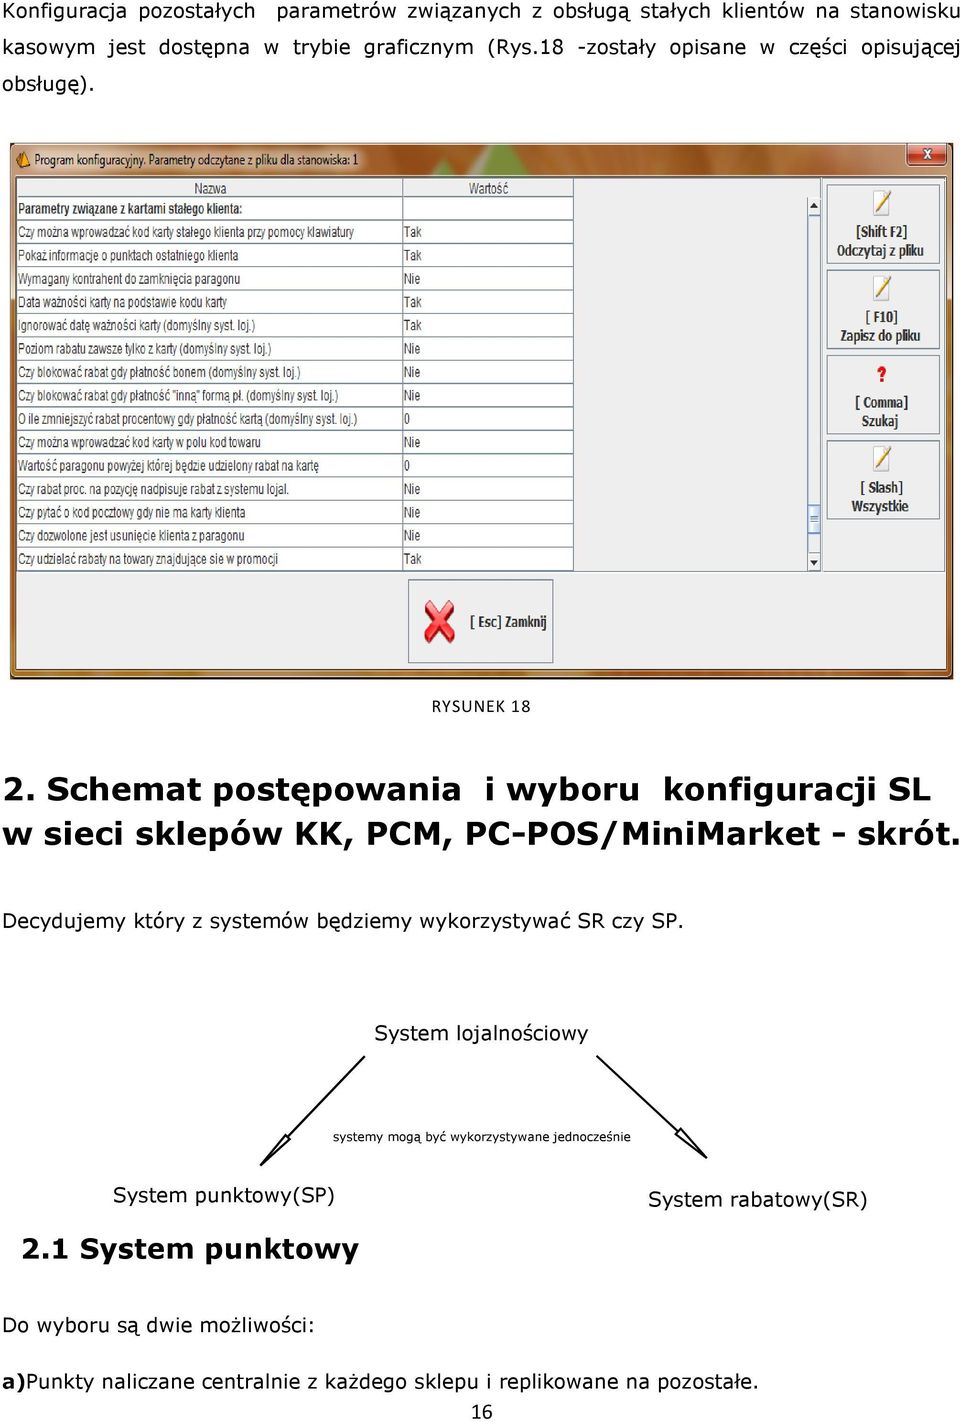 Schemat postępowania i wyboru konfiguracji SL w sieci sklepów KK, PCM, PC-POS/MiniMarket POS/MiniMarket - skrót.